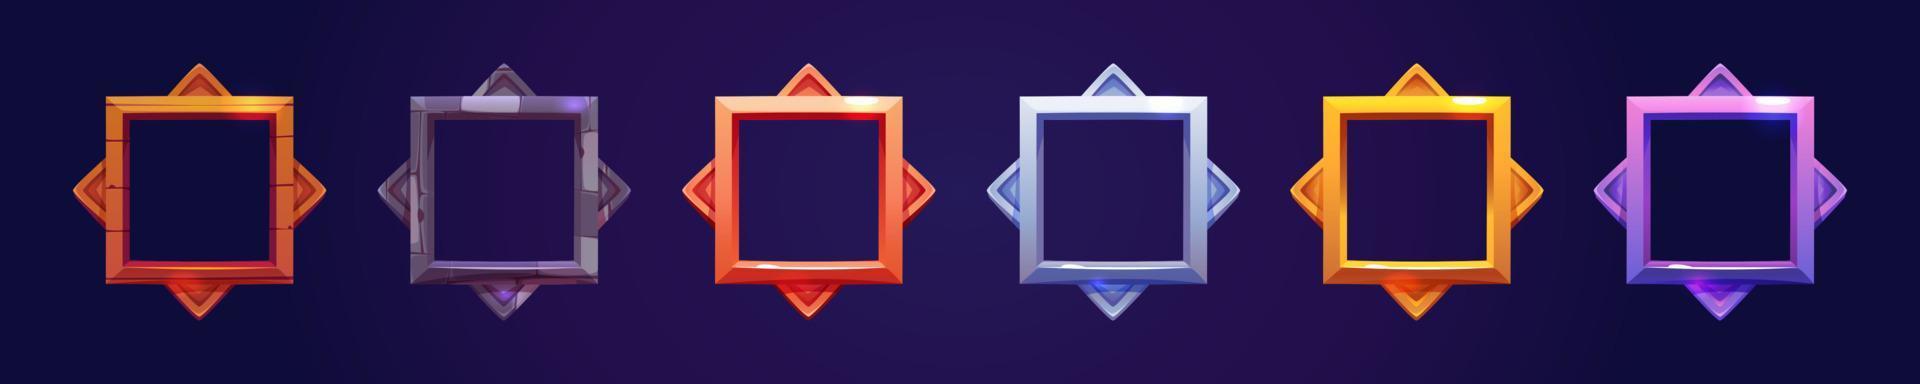 conjunto de marcos cuadrados de avatar o rango para la interfaz de usuario del juego vector